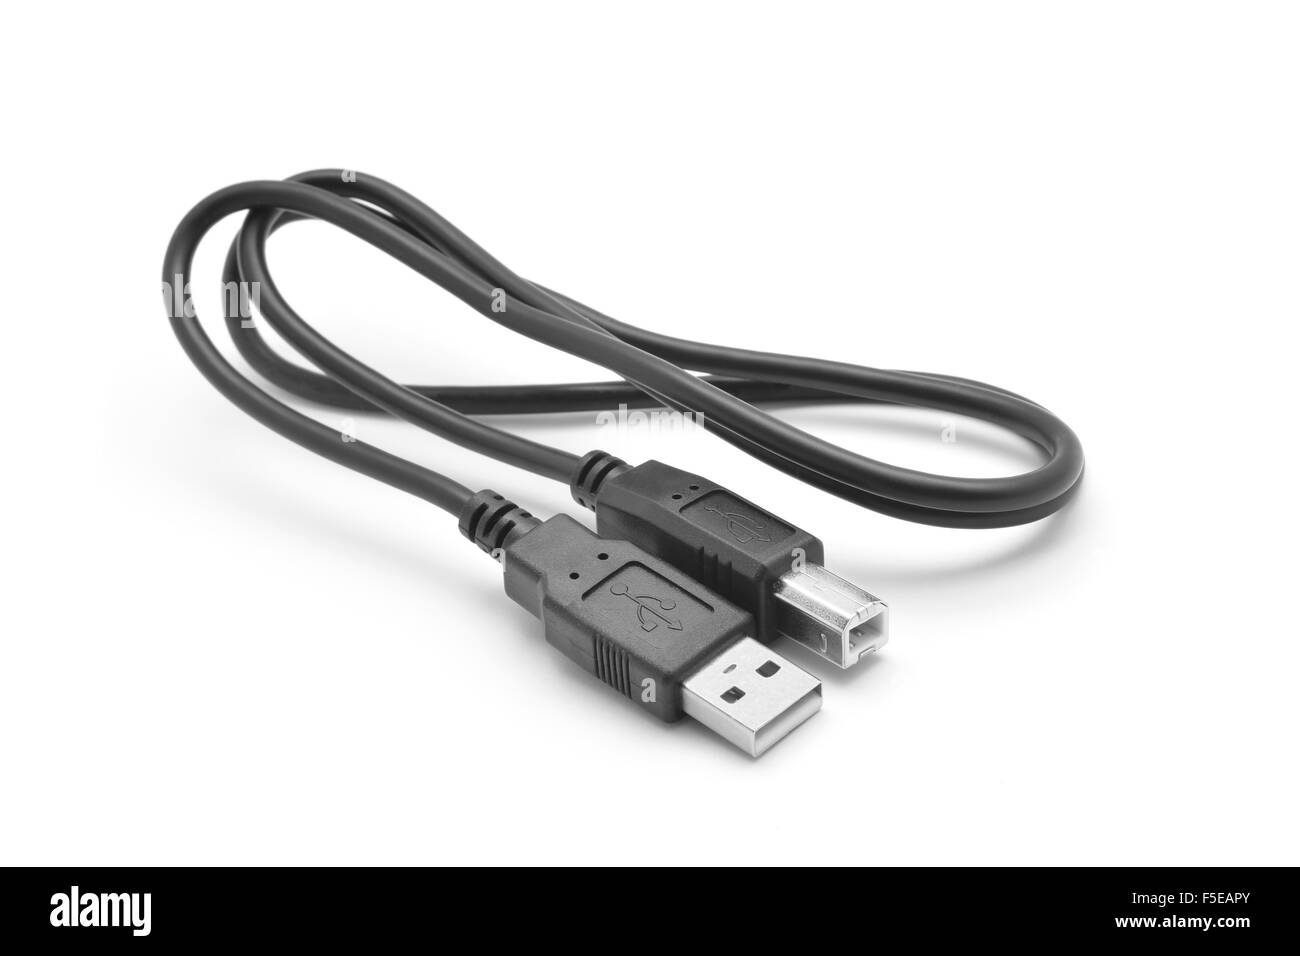 externe Festplatte USB-Kabel Stockfotografie - Alamy